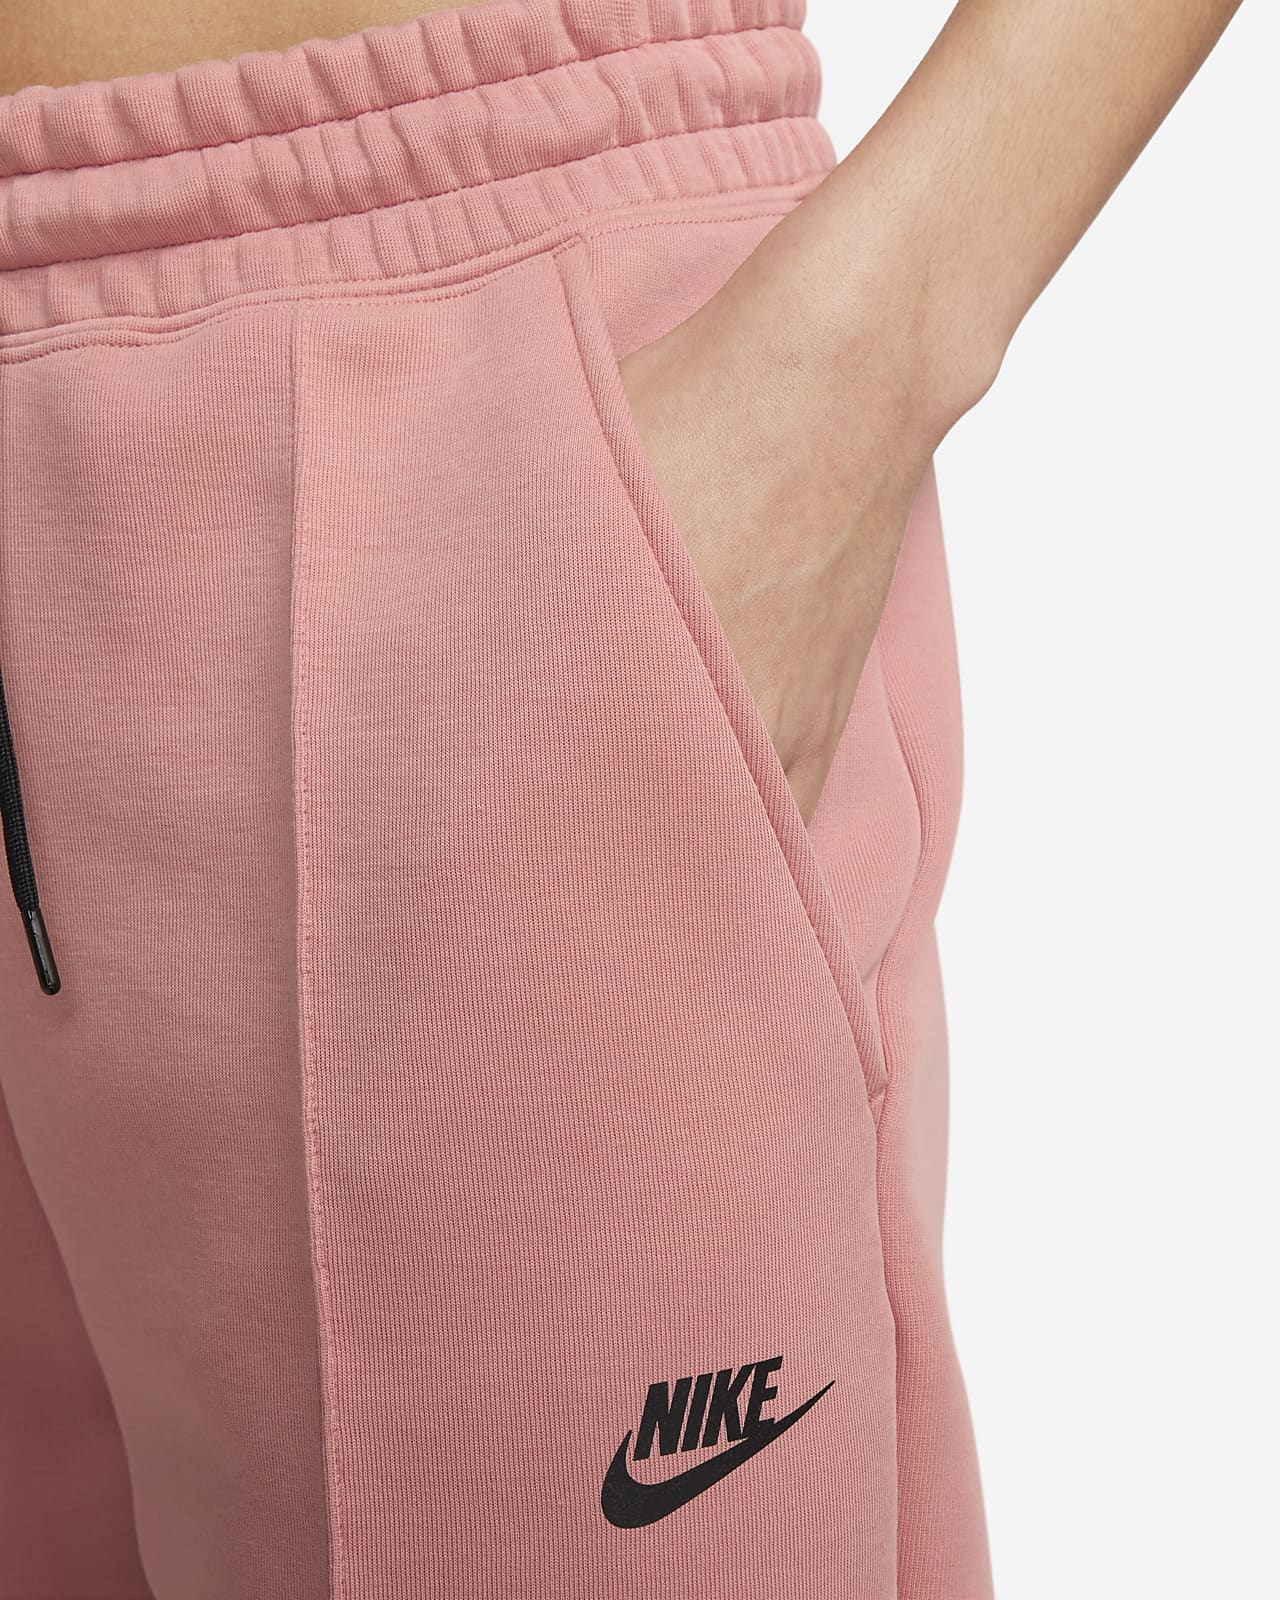 Trechter webspin Nutteloos Verplaatsbaar Nike Sportswear Tech Fleece Women's Mid-Rise Joggers. Nike.com